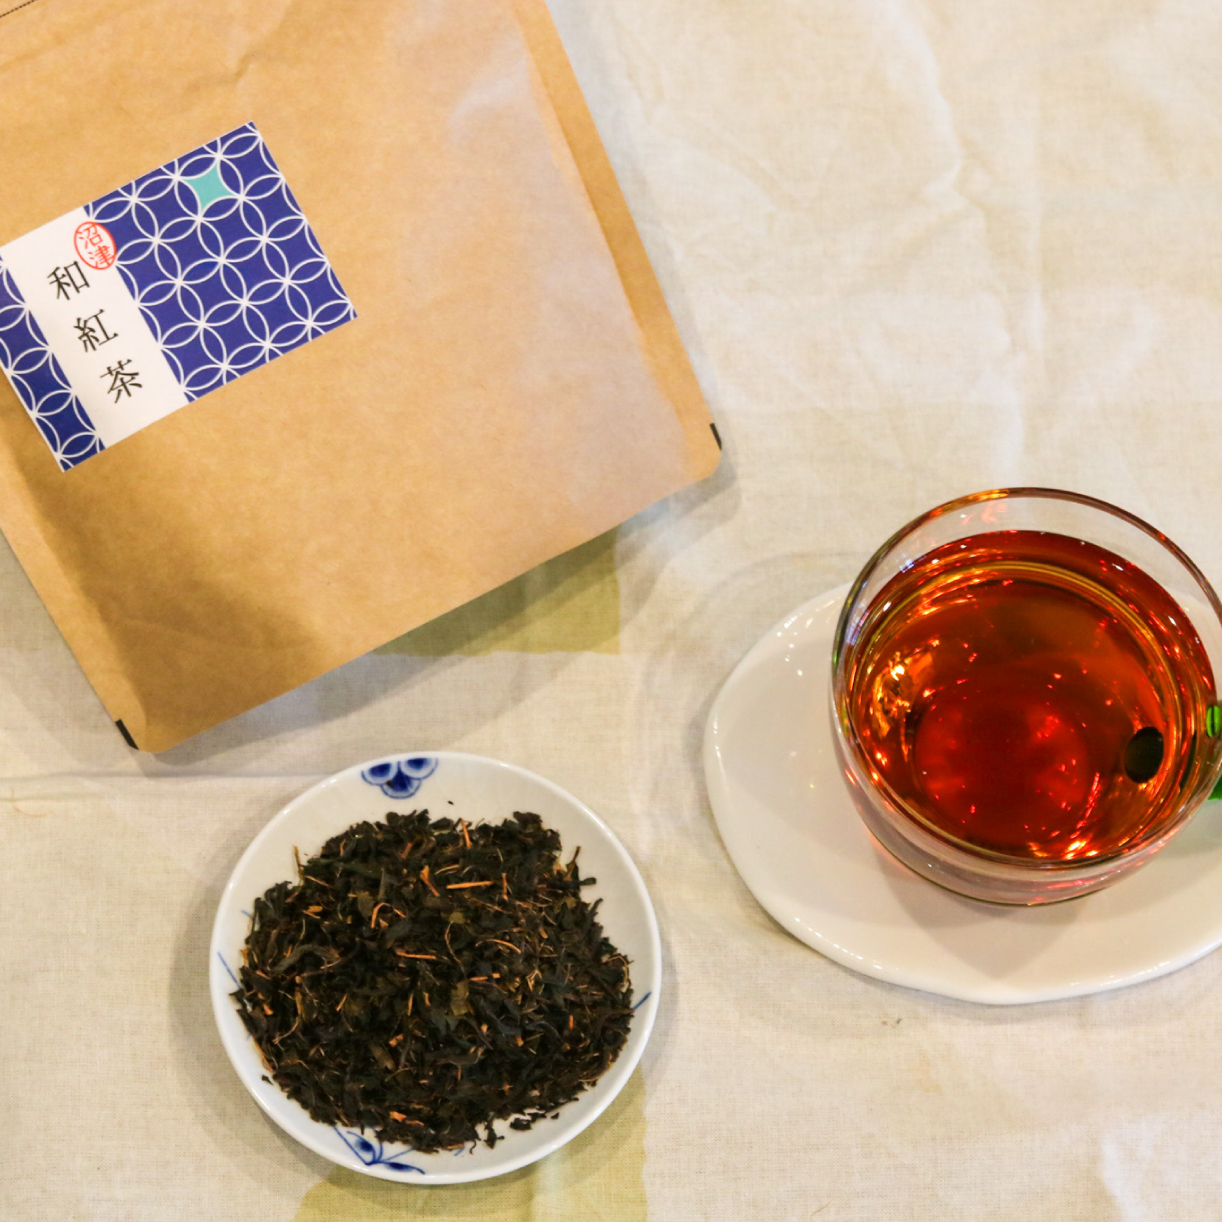 和紅茶 茶葉 100g 2袋 合計200g 農家直送 お試し お茶 茶葉 静岡 沼津